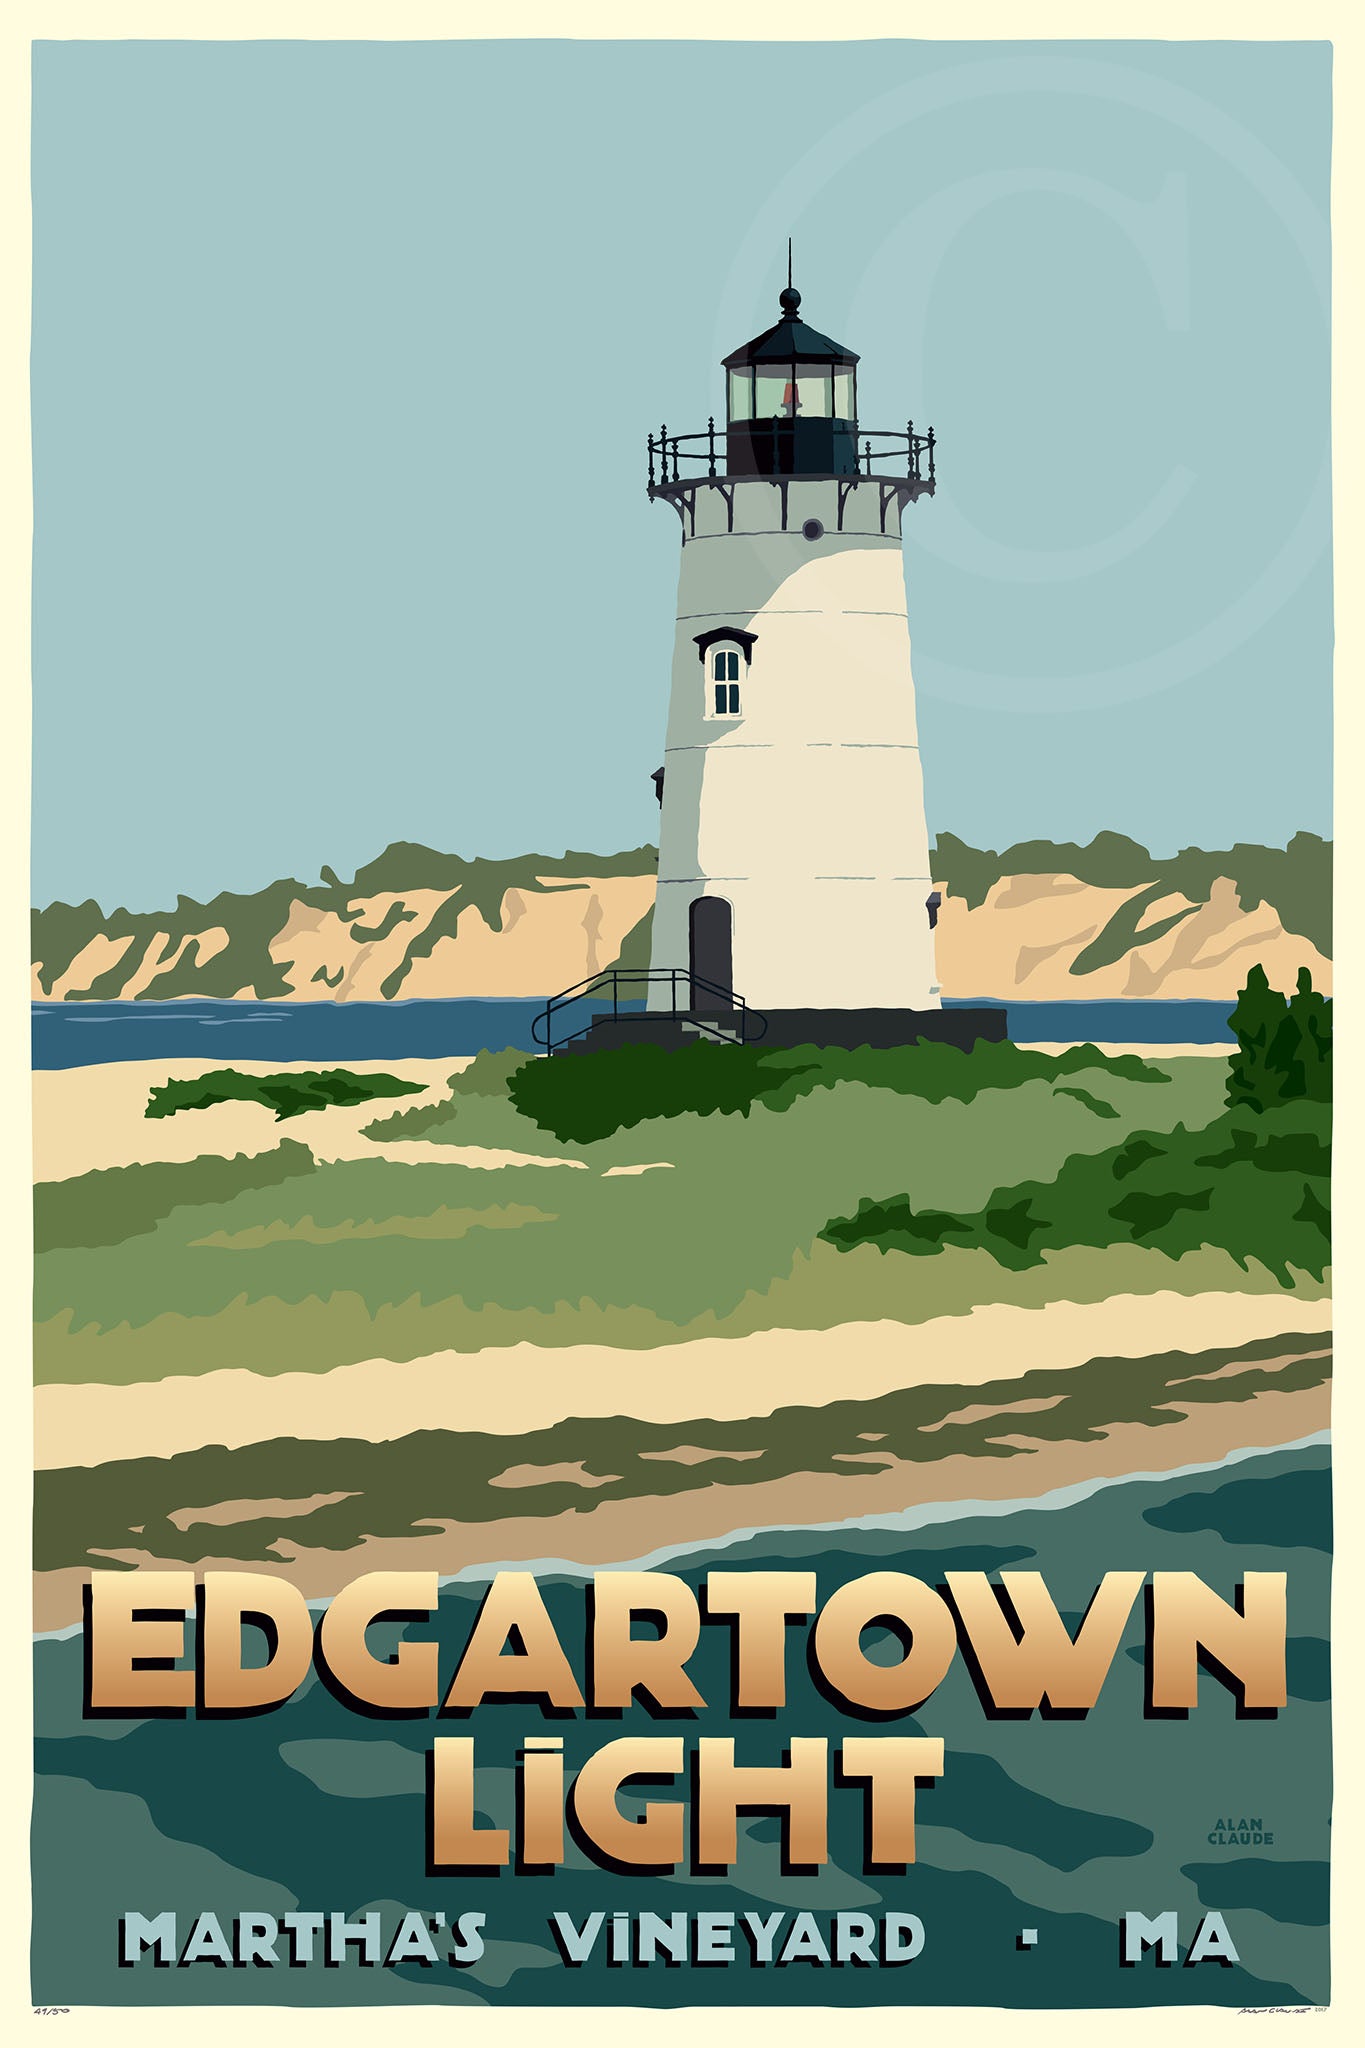 Edgartown Light Art Print 36" x 53" Travel Poster By Alan Claude - Massachusetts